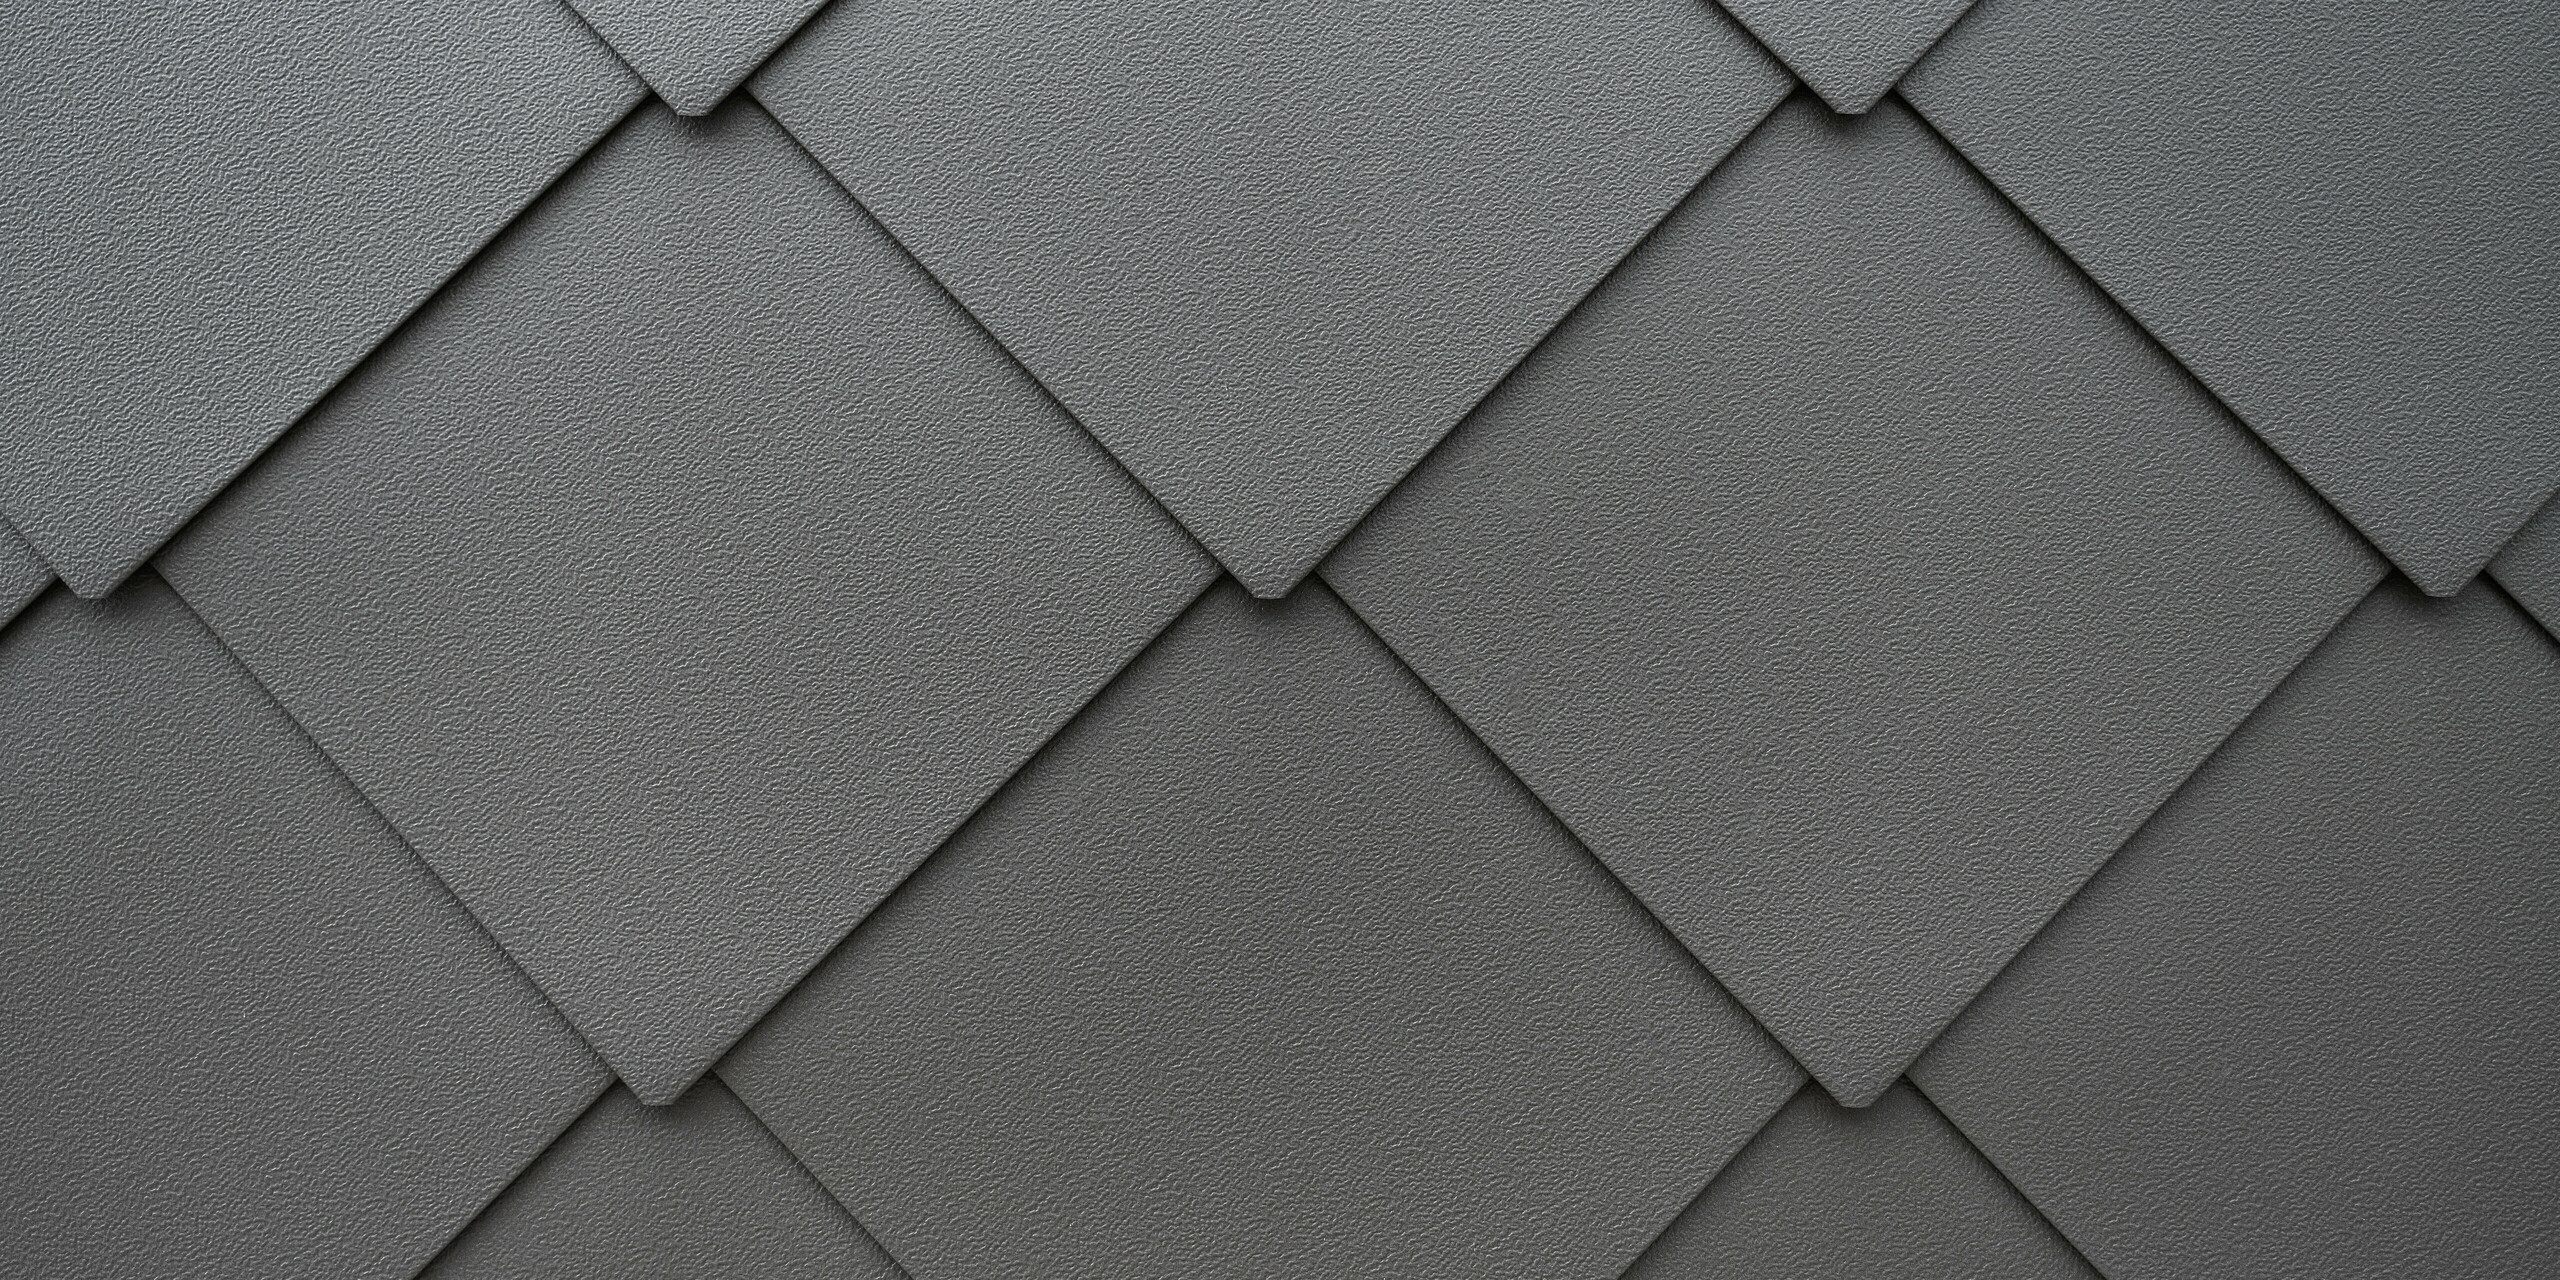 Detailaufnahme der texturierten Oberfläche eines PREFA Fassadensystems aus Aluminium. Die harmonische Anordnung der PREFA Wandrauten 44x44 erzeugt ein klares, geometrisches Muster, das Eleganz und moderne Architektur widerspiegelt, betont durch die subtile Farbgebung und die präzise Verarbeitung. Das widerstandsfähige Blech bietet dem Reihenhaus in Kaltern, Südtirol, Schutz vor winterlichen Bedingungen.